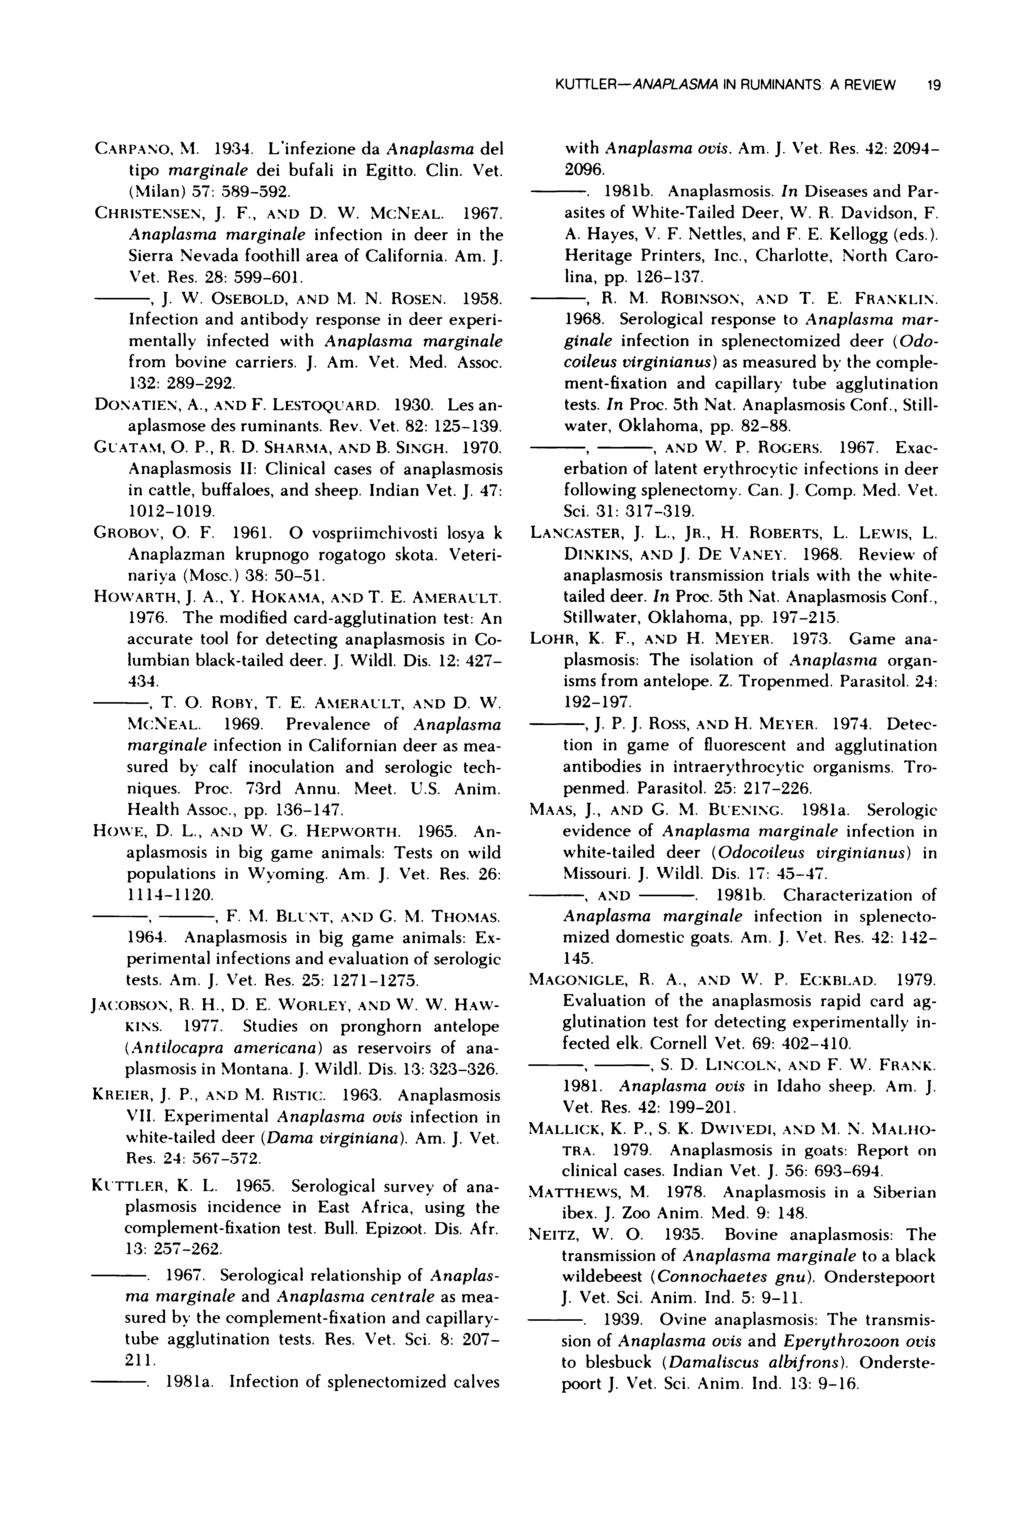 KUTTLER-ANAPLASMA IN RUMINANTS A REVIEW 19 CARPANO, NI. 1934. L infezione da Anaplasma del tipo marginale dei bufali in Egitto. Clin. Vet. (Milan) 57: 589-592. CHRISTENSEN, J. F., AND D. W. MCNEAL.